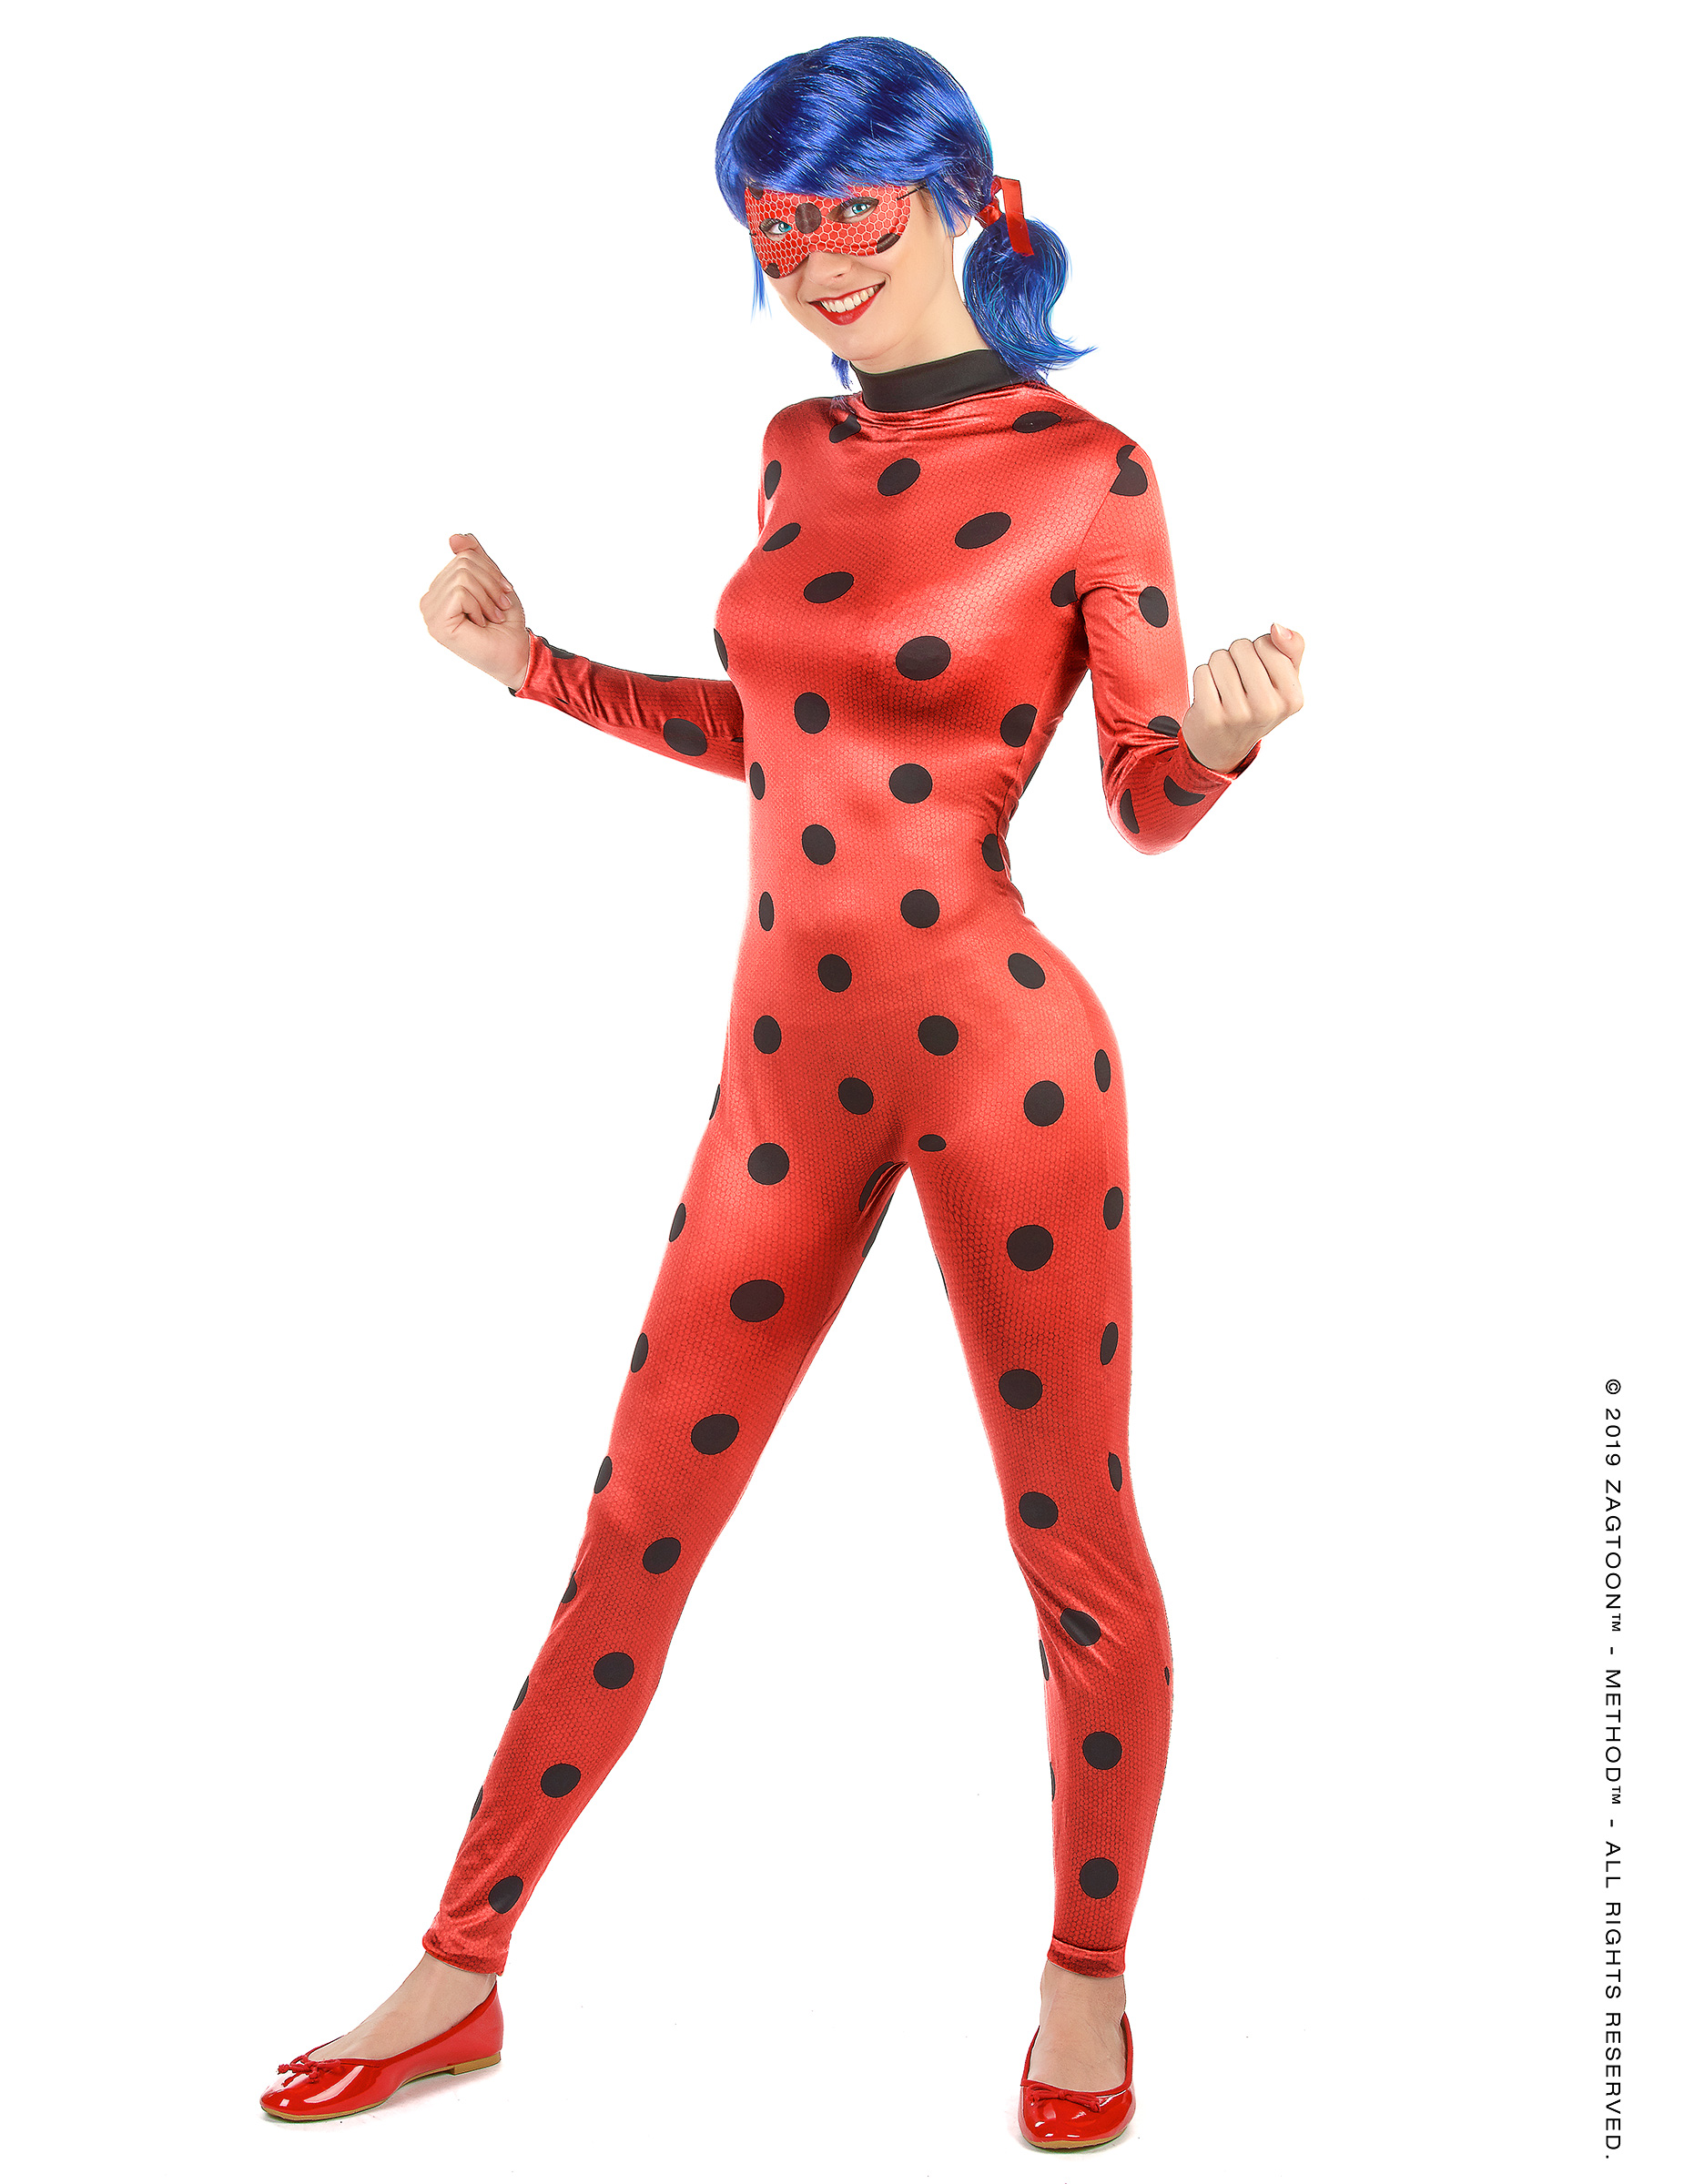 Déguisement miraculous ladybug femme – Déguisements cadeaux pas chers, Boutique Arlequin